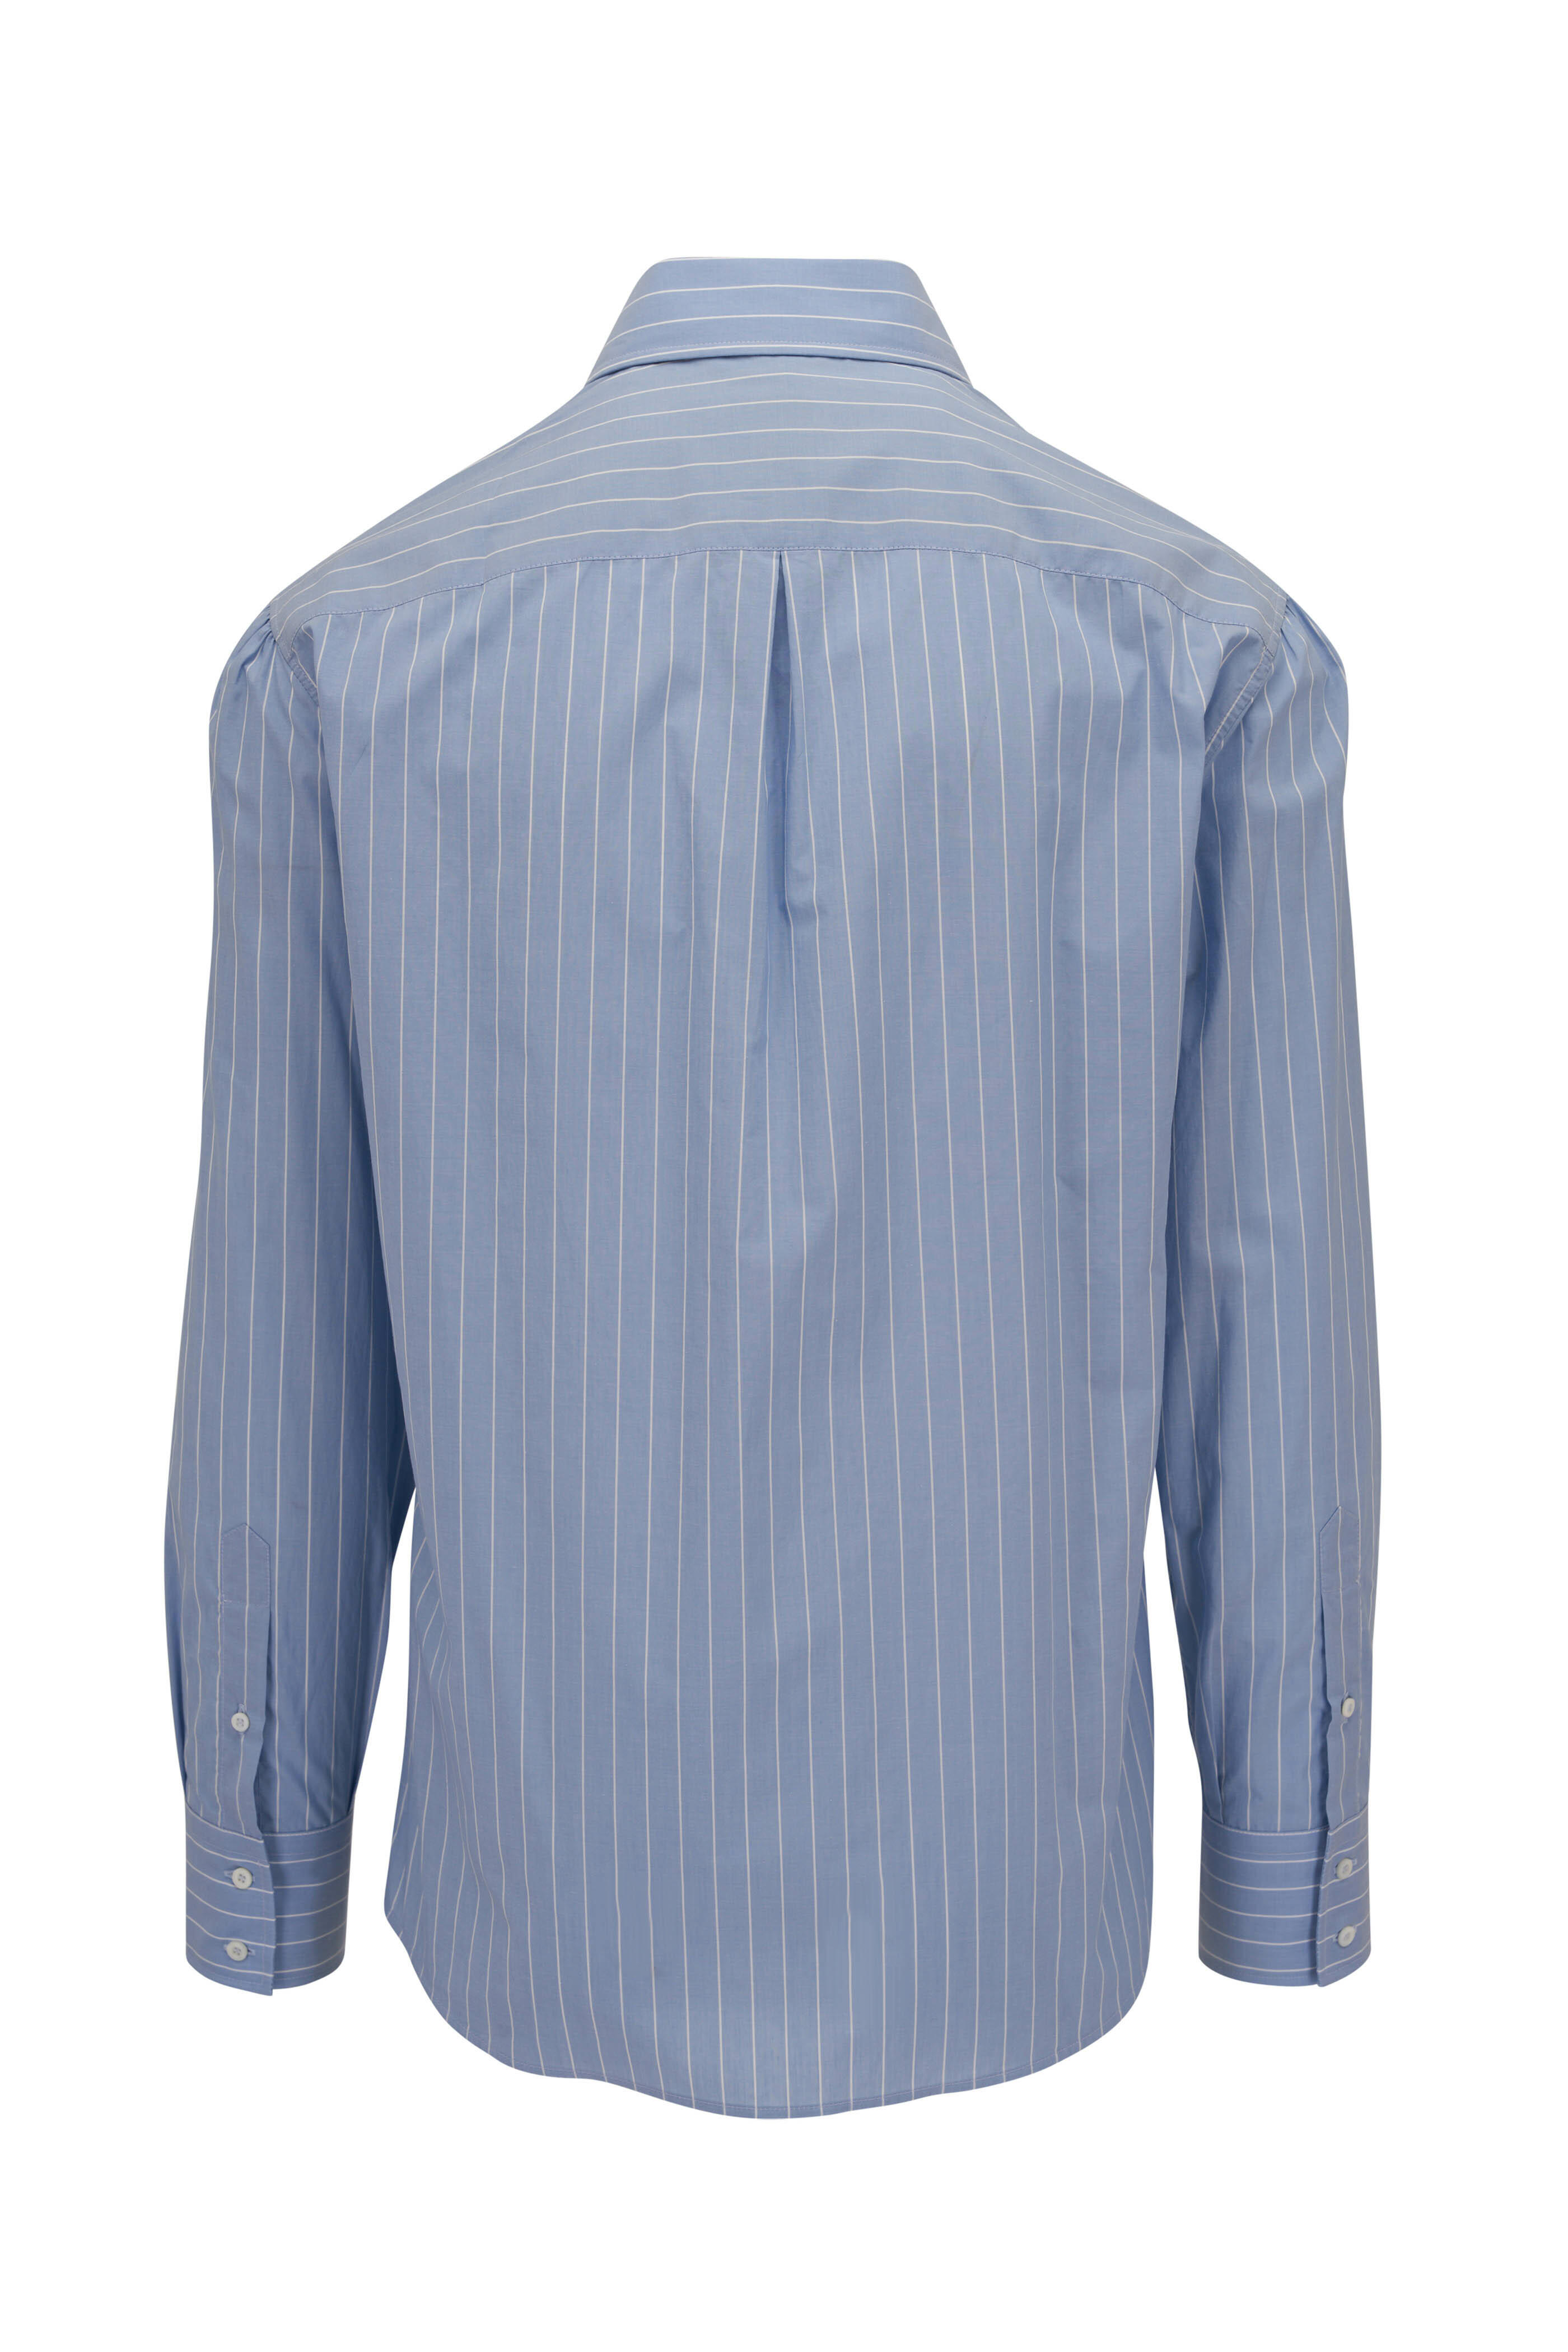 Brunello Cucinelli - Light Blue Pinstriped Cotton Sport Shirt